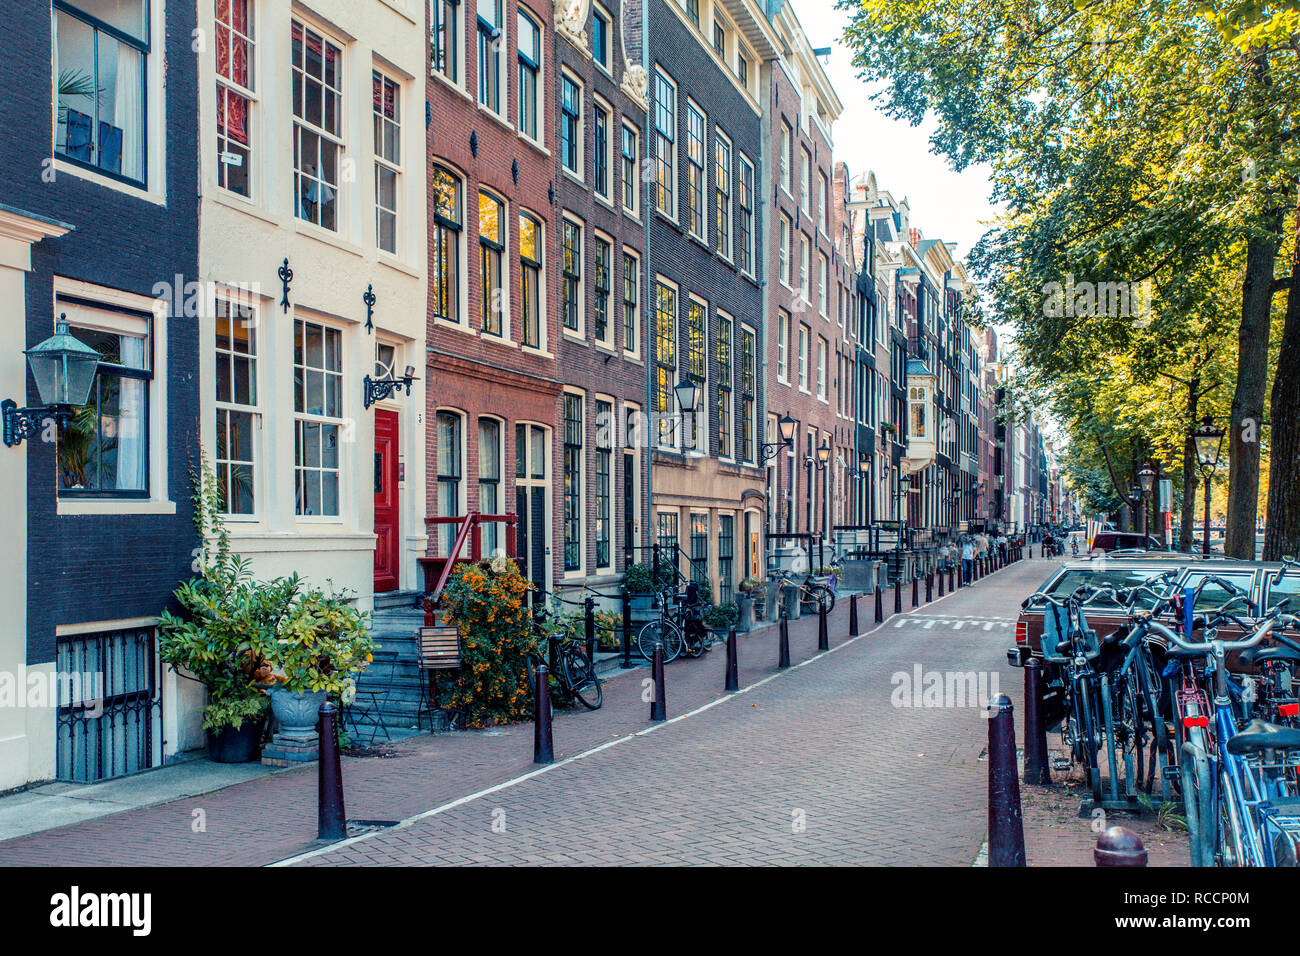 AMSTERDAM, Paesi Bassi - 1 Settembre 2019: scene di strada dalla città di Amsterdam con esempio di architettura tipica. Foto Stock